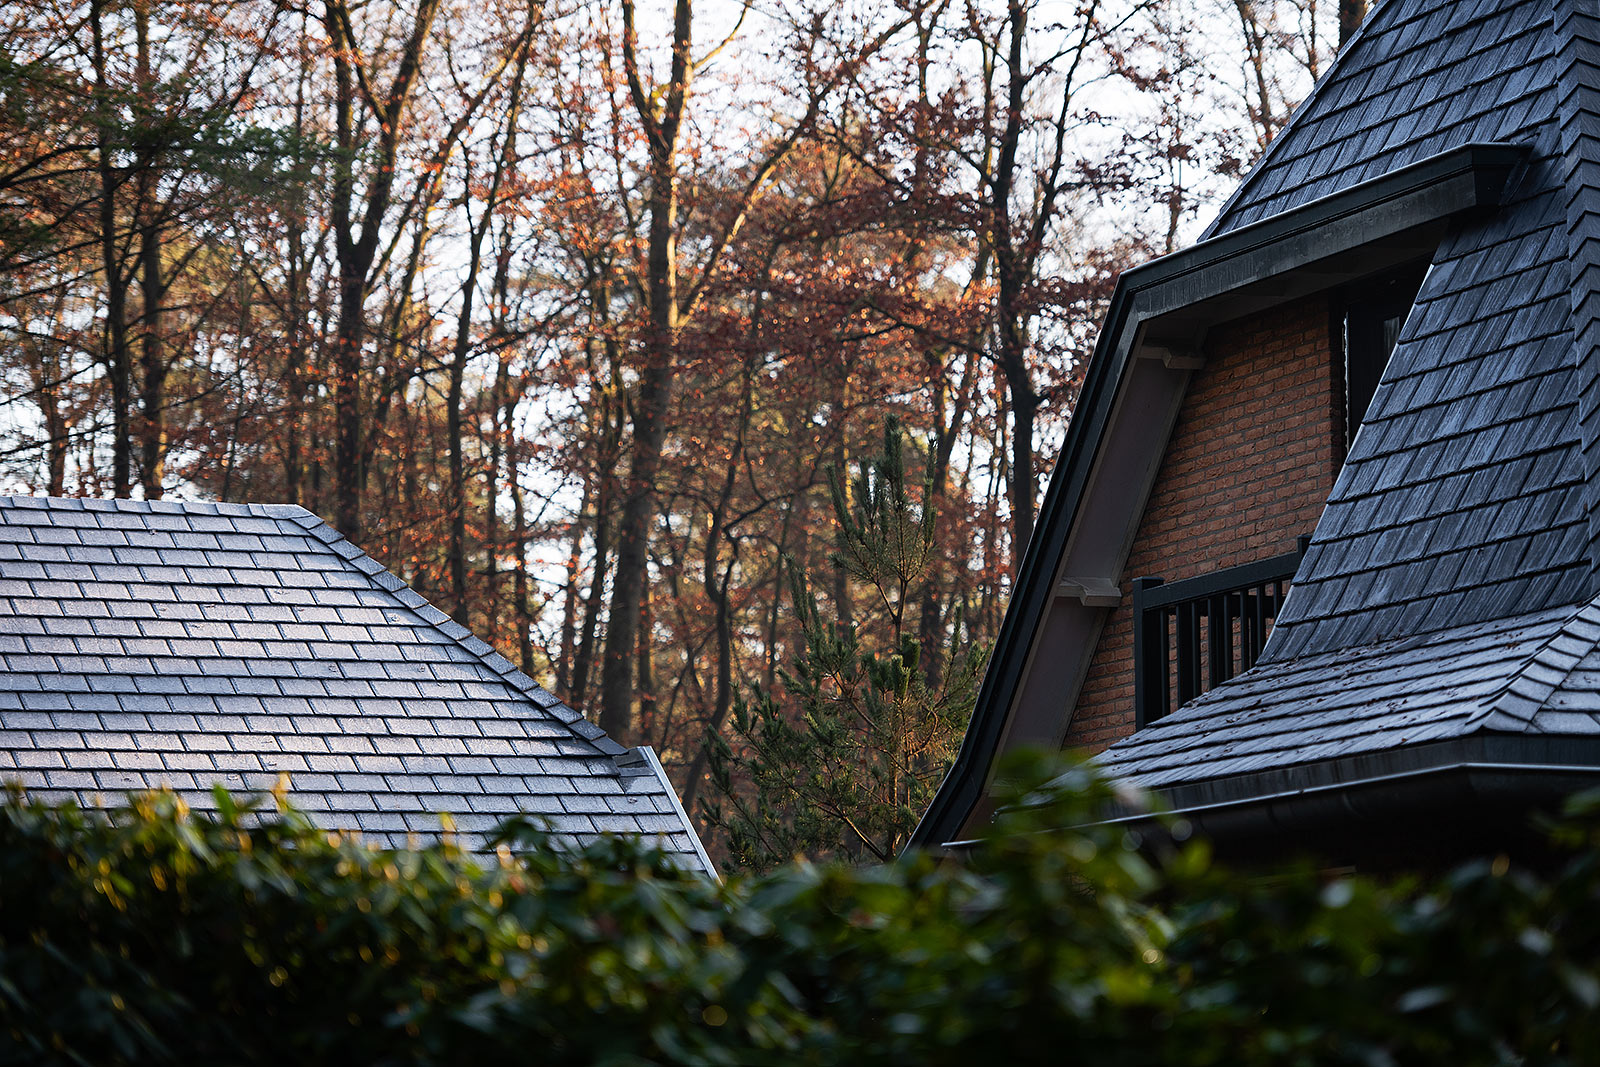 Landelijk woonhuis in bosrijke omgeving gerenoveerd met Heritage Slate rubber dakleien - Vierhouten